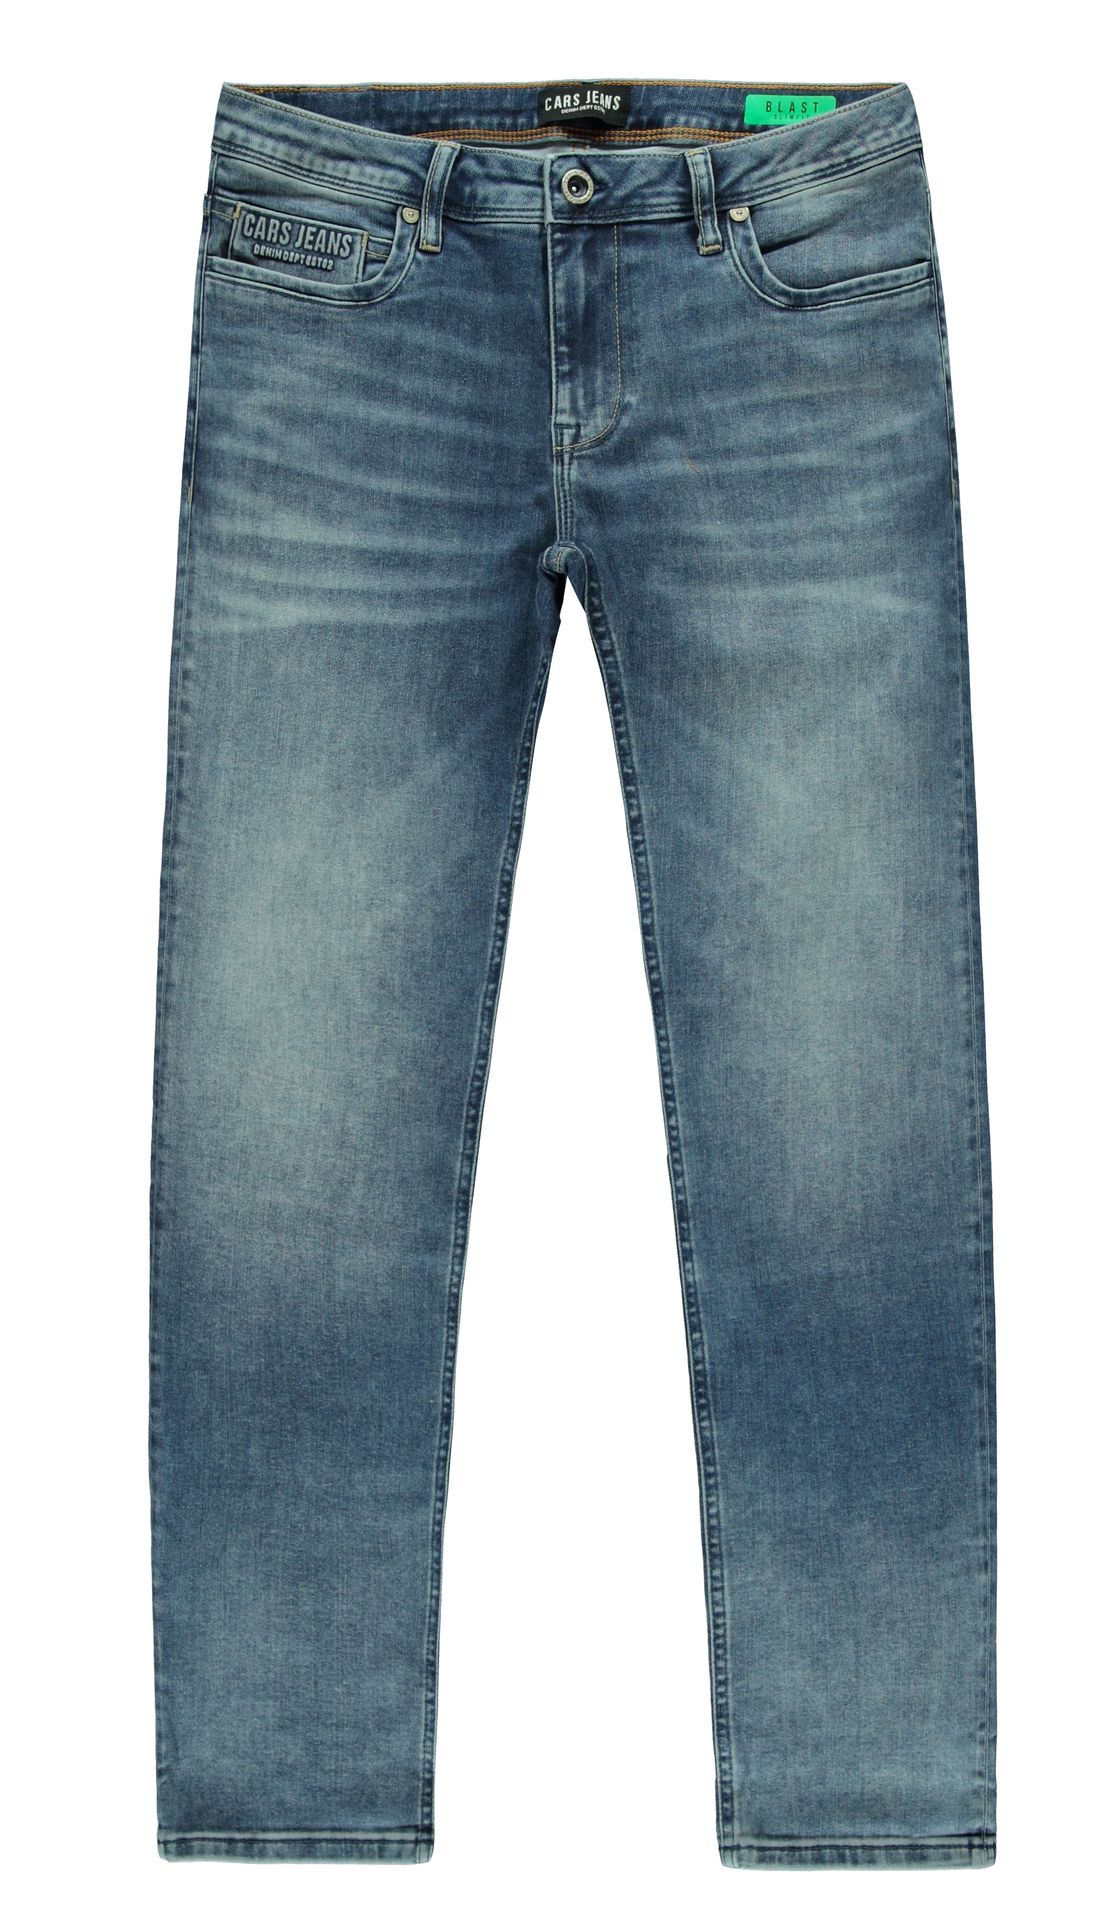 Cars jeans Jeans Blast Jog Slim Fit 06 stone used 00102504-EKA03000200000010